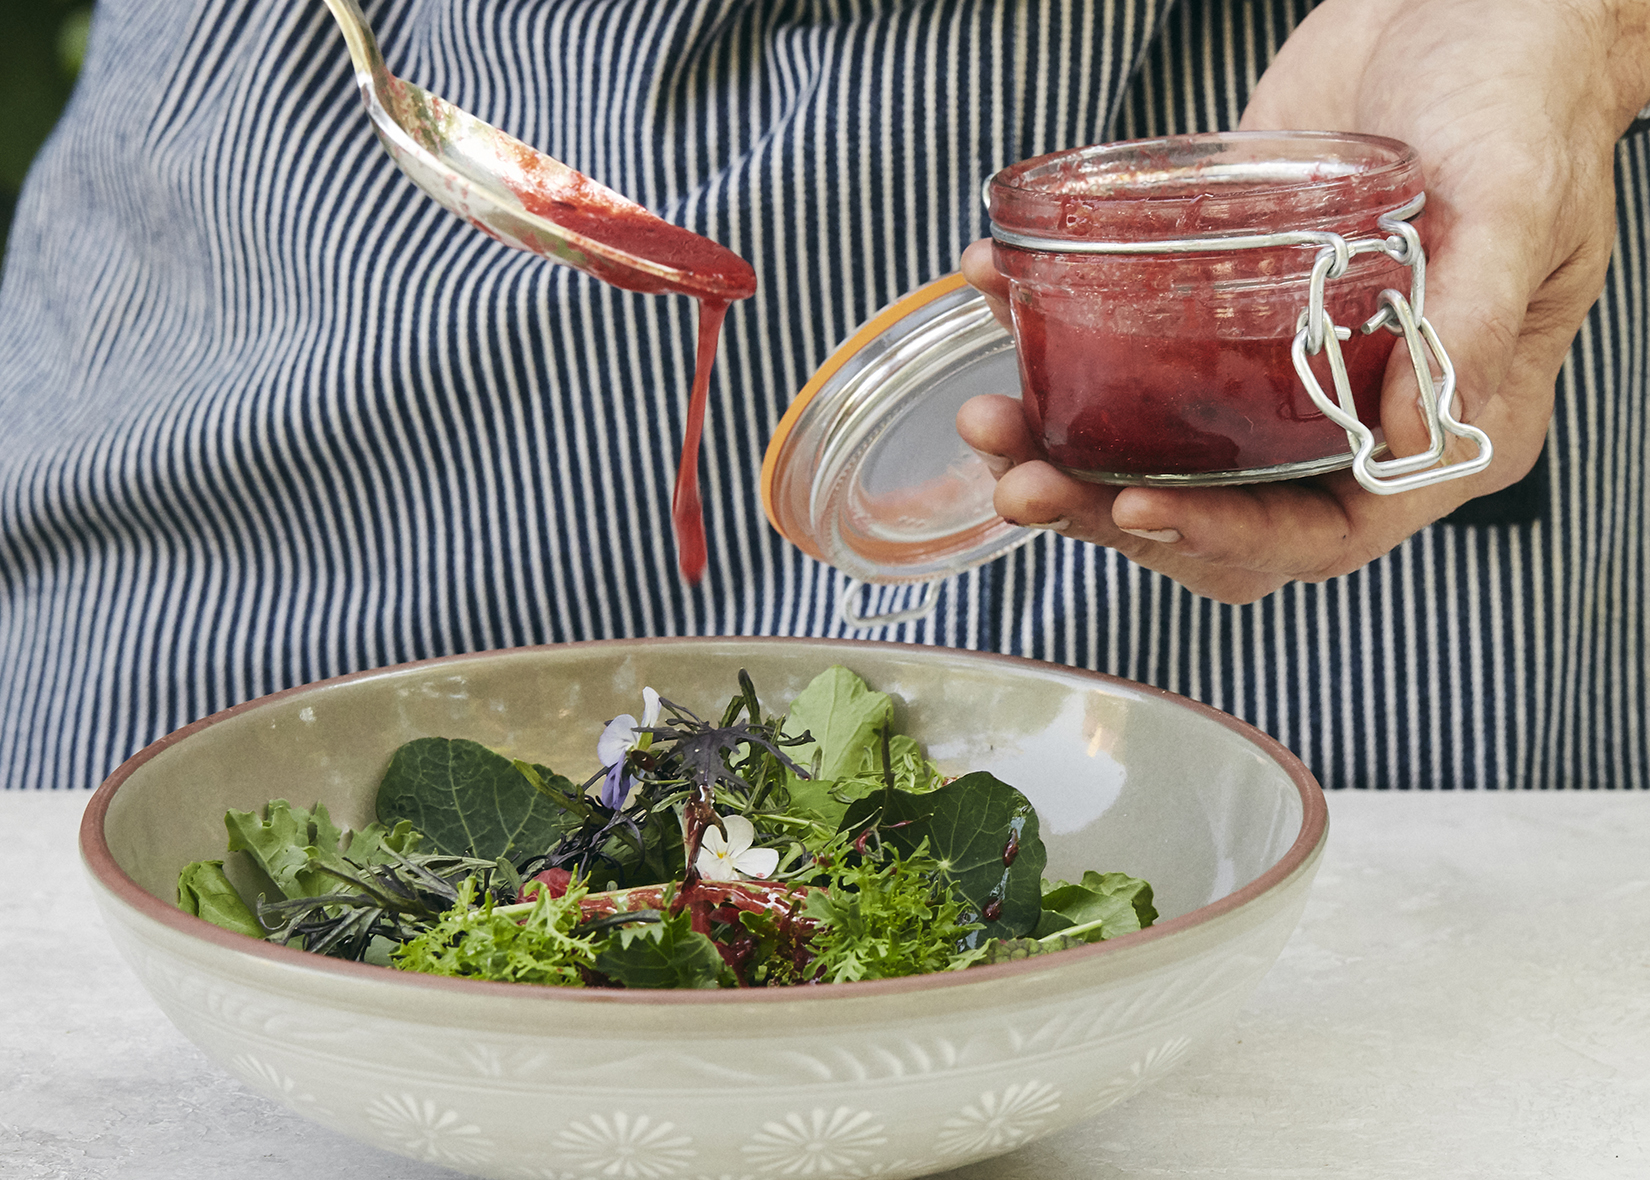 Raspberry Vinaigrette Salad Dressing